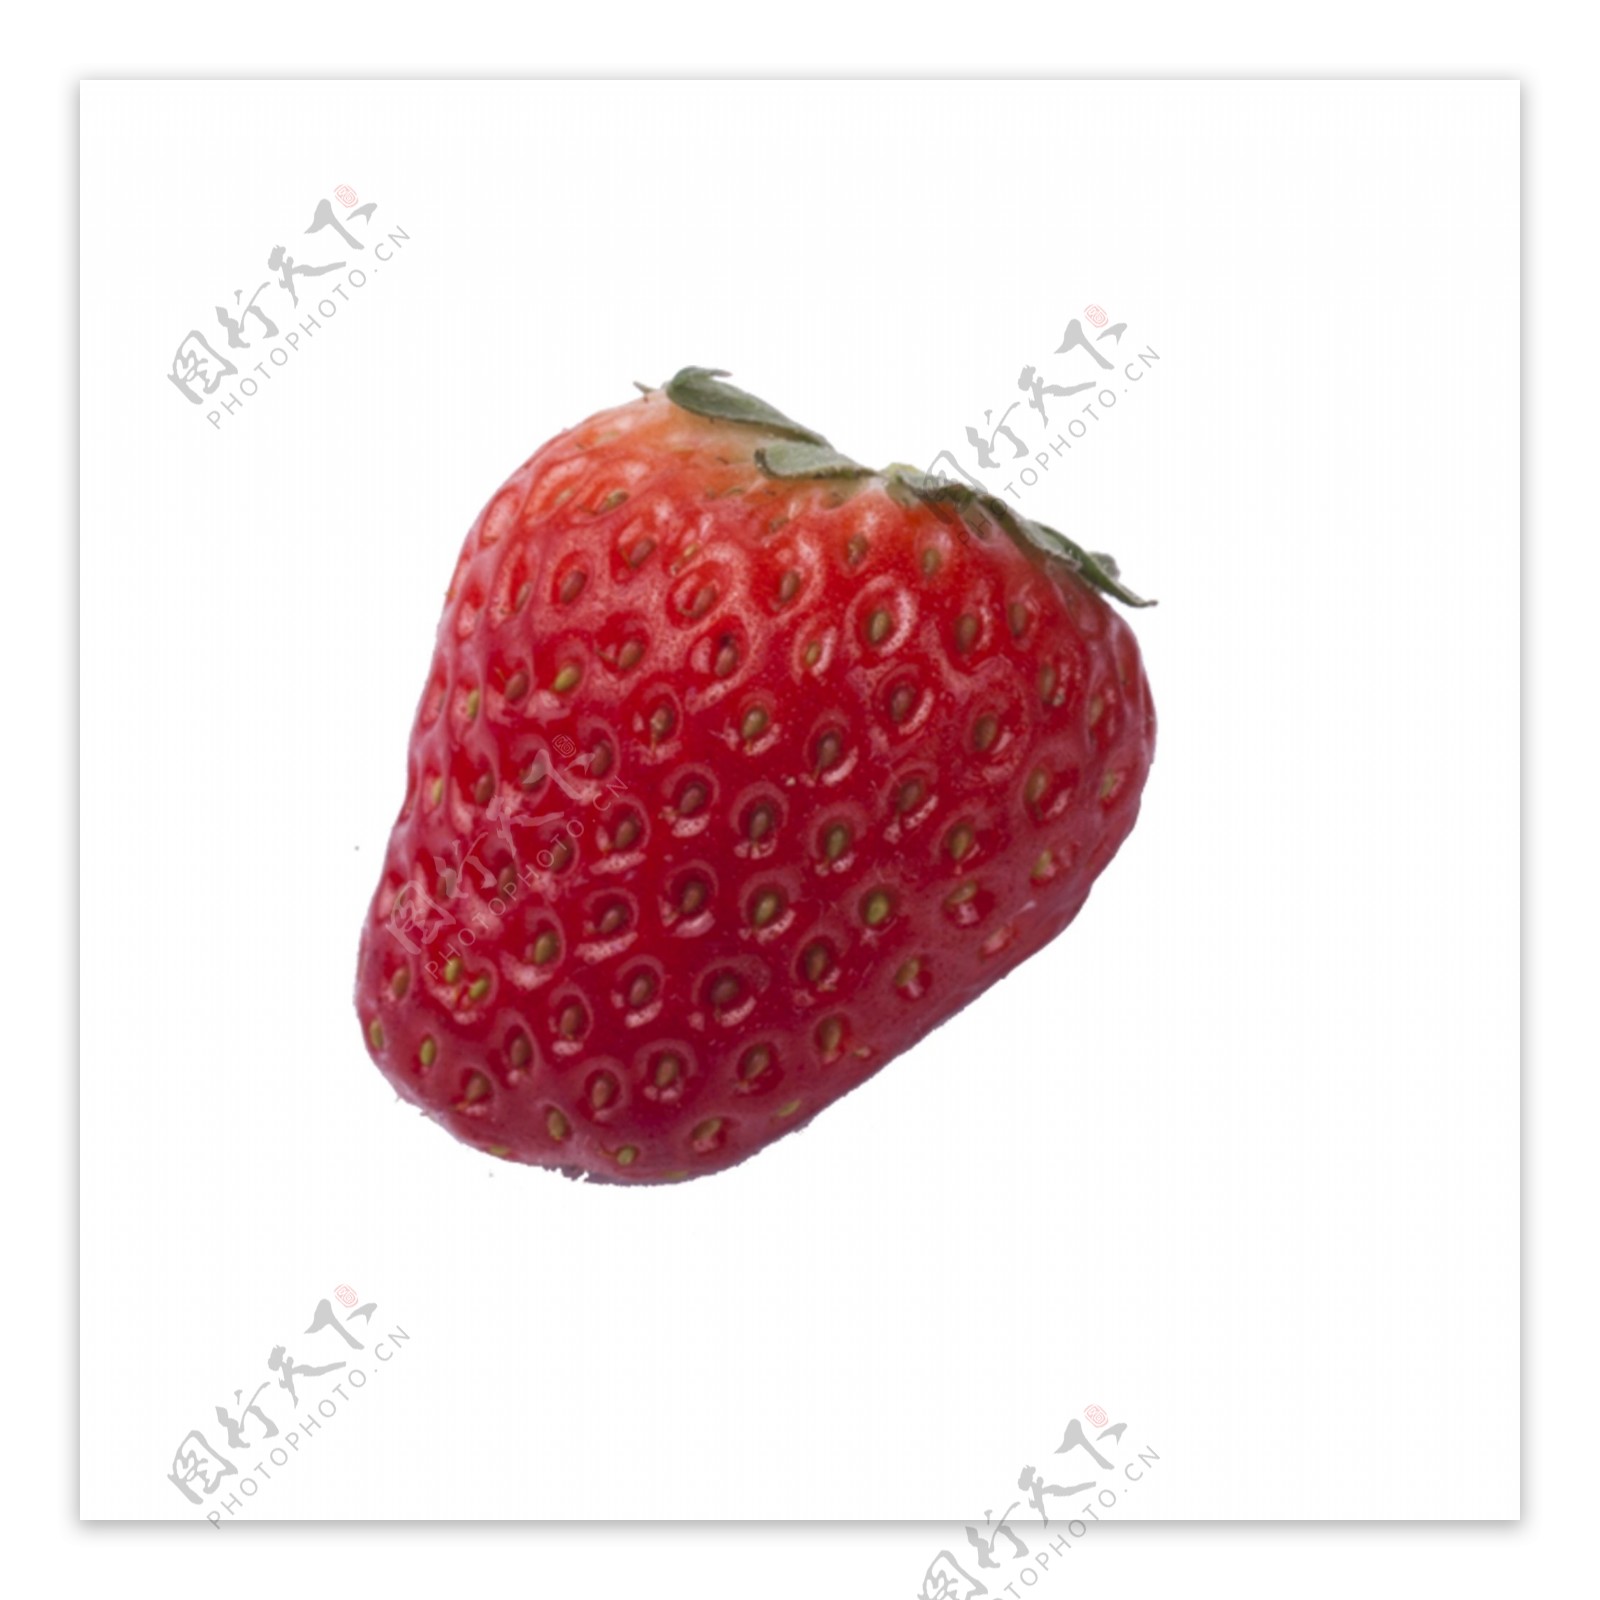 一颗新鲜的草莓免扣图